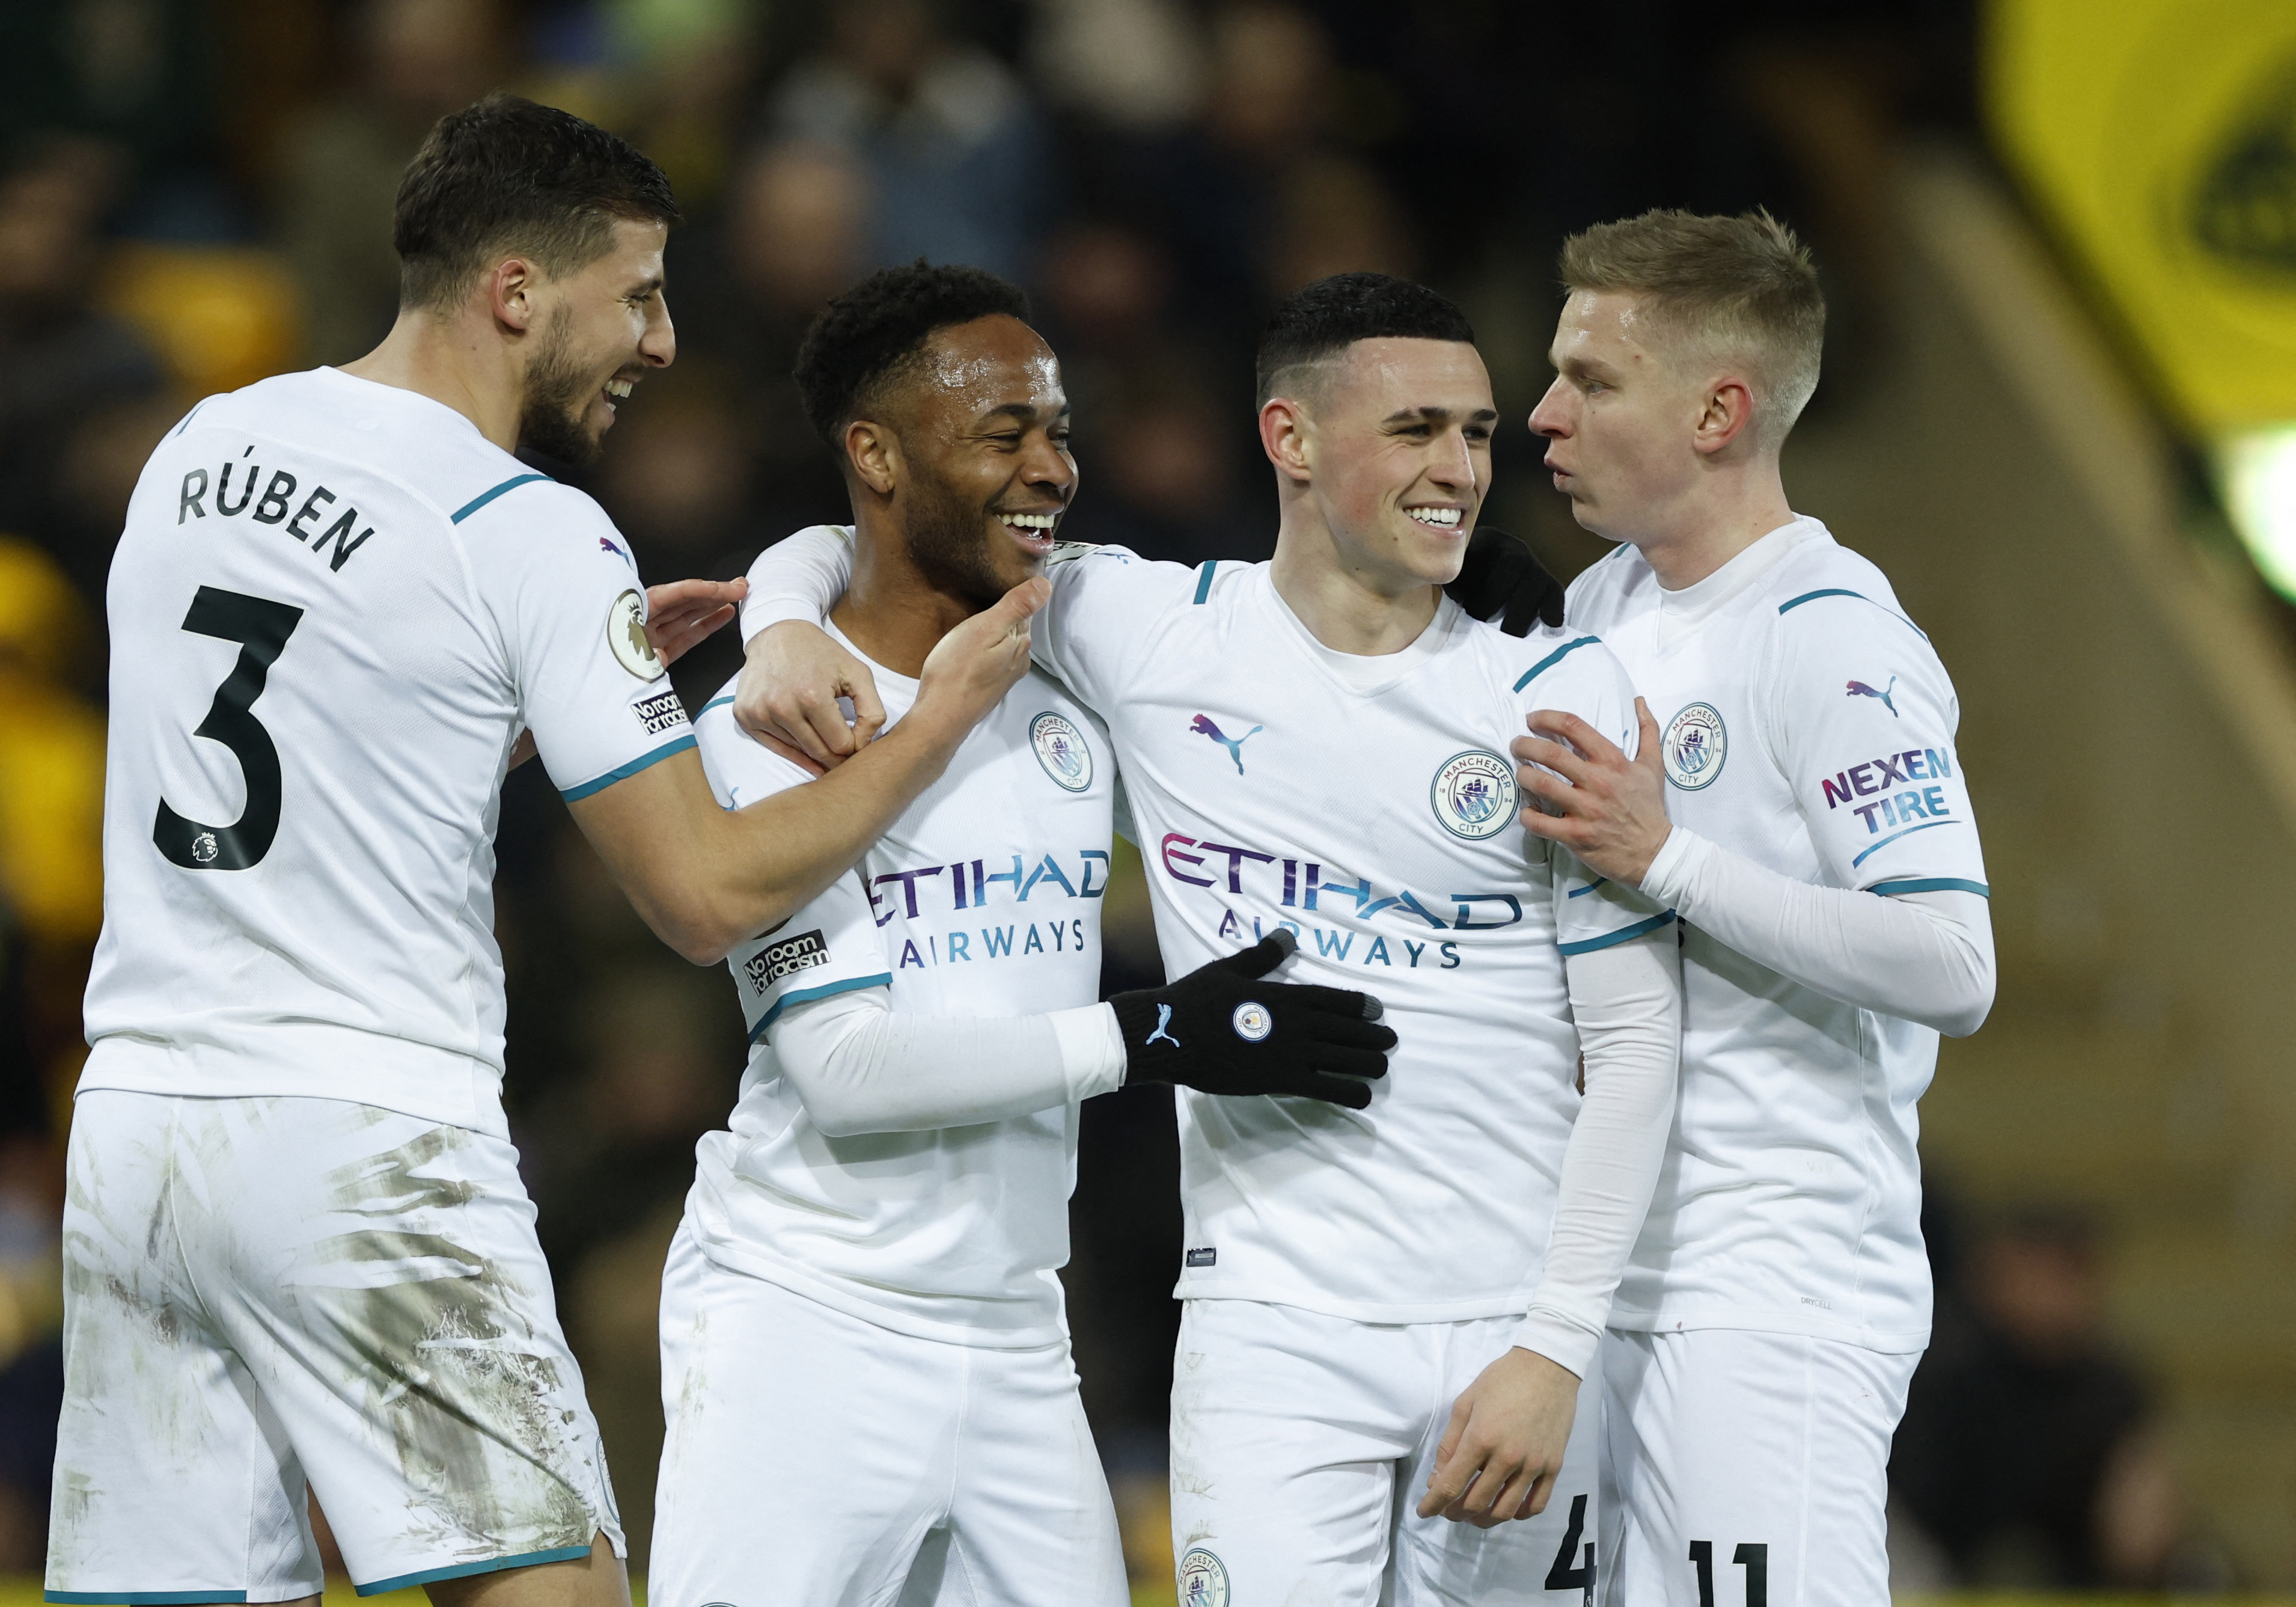 Man City 1-1 Everton, Newcastle 0-0 Leeds: Premier League – as it happened, Premier League